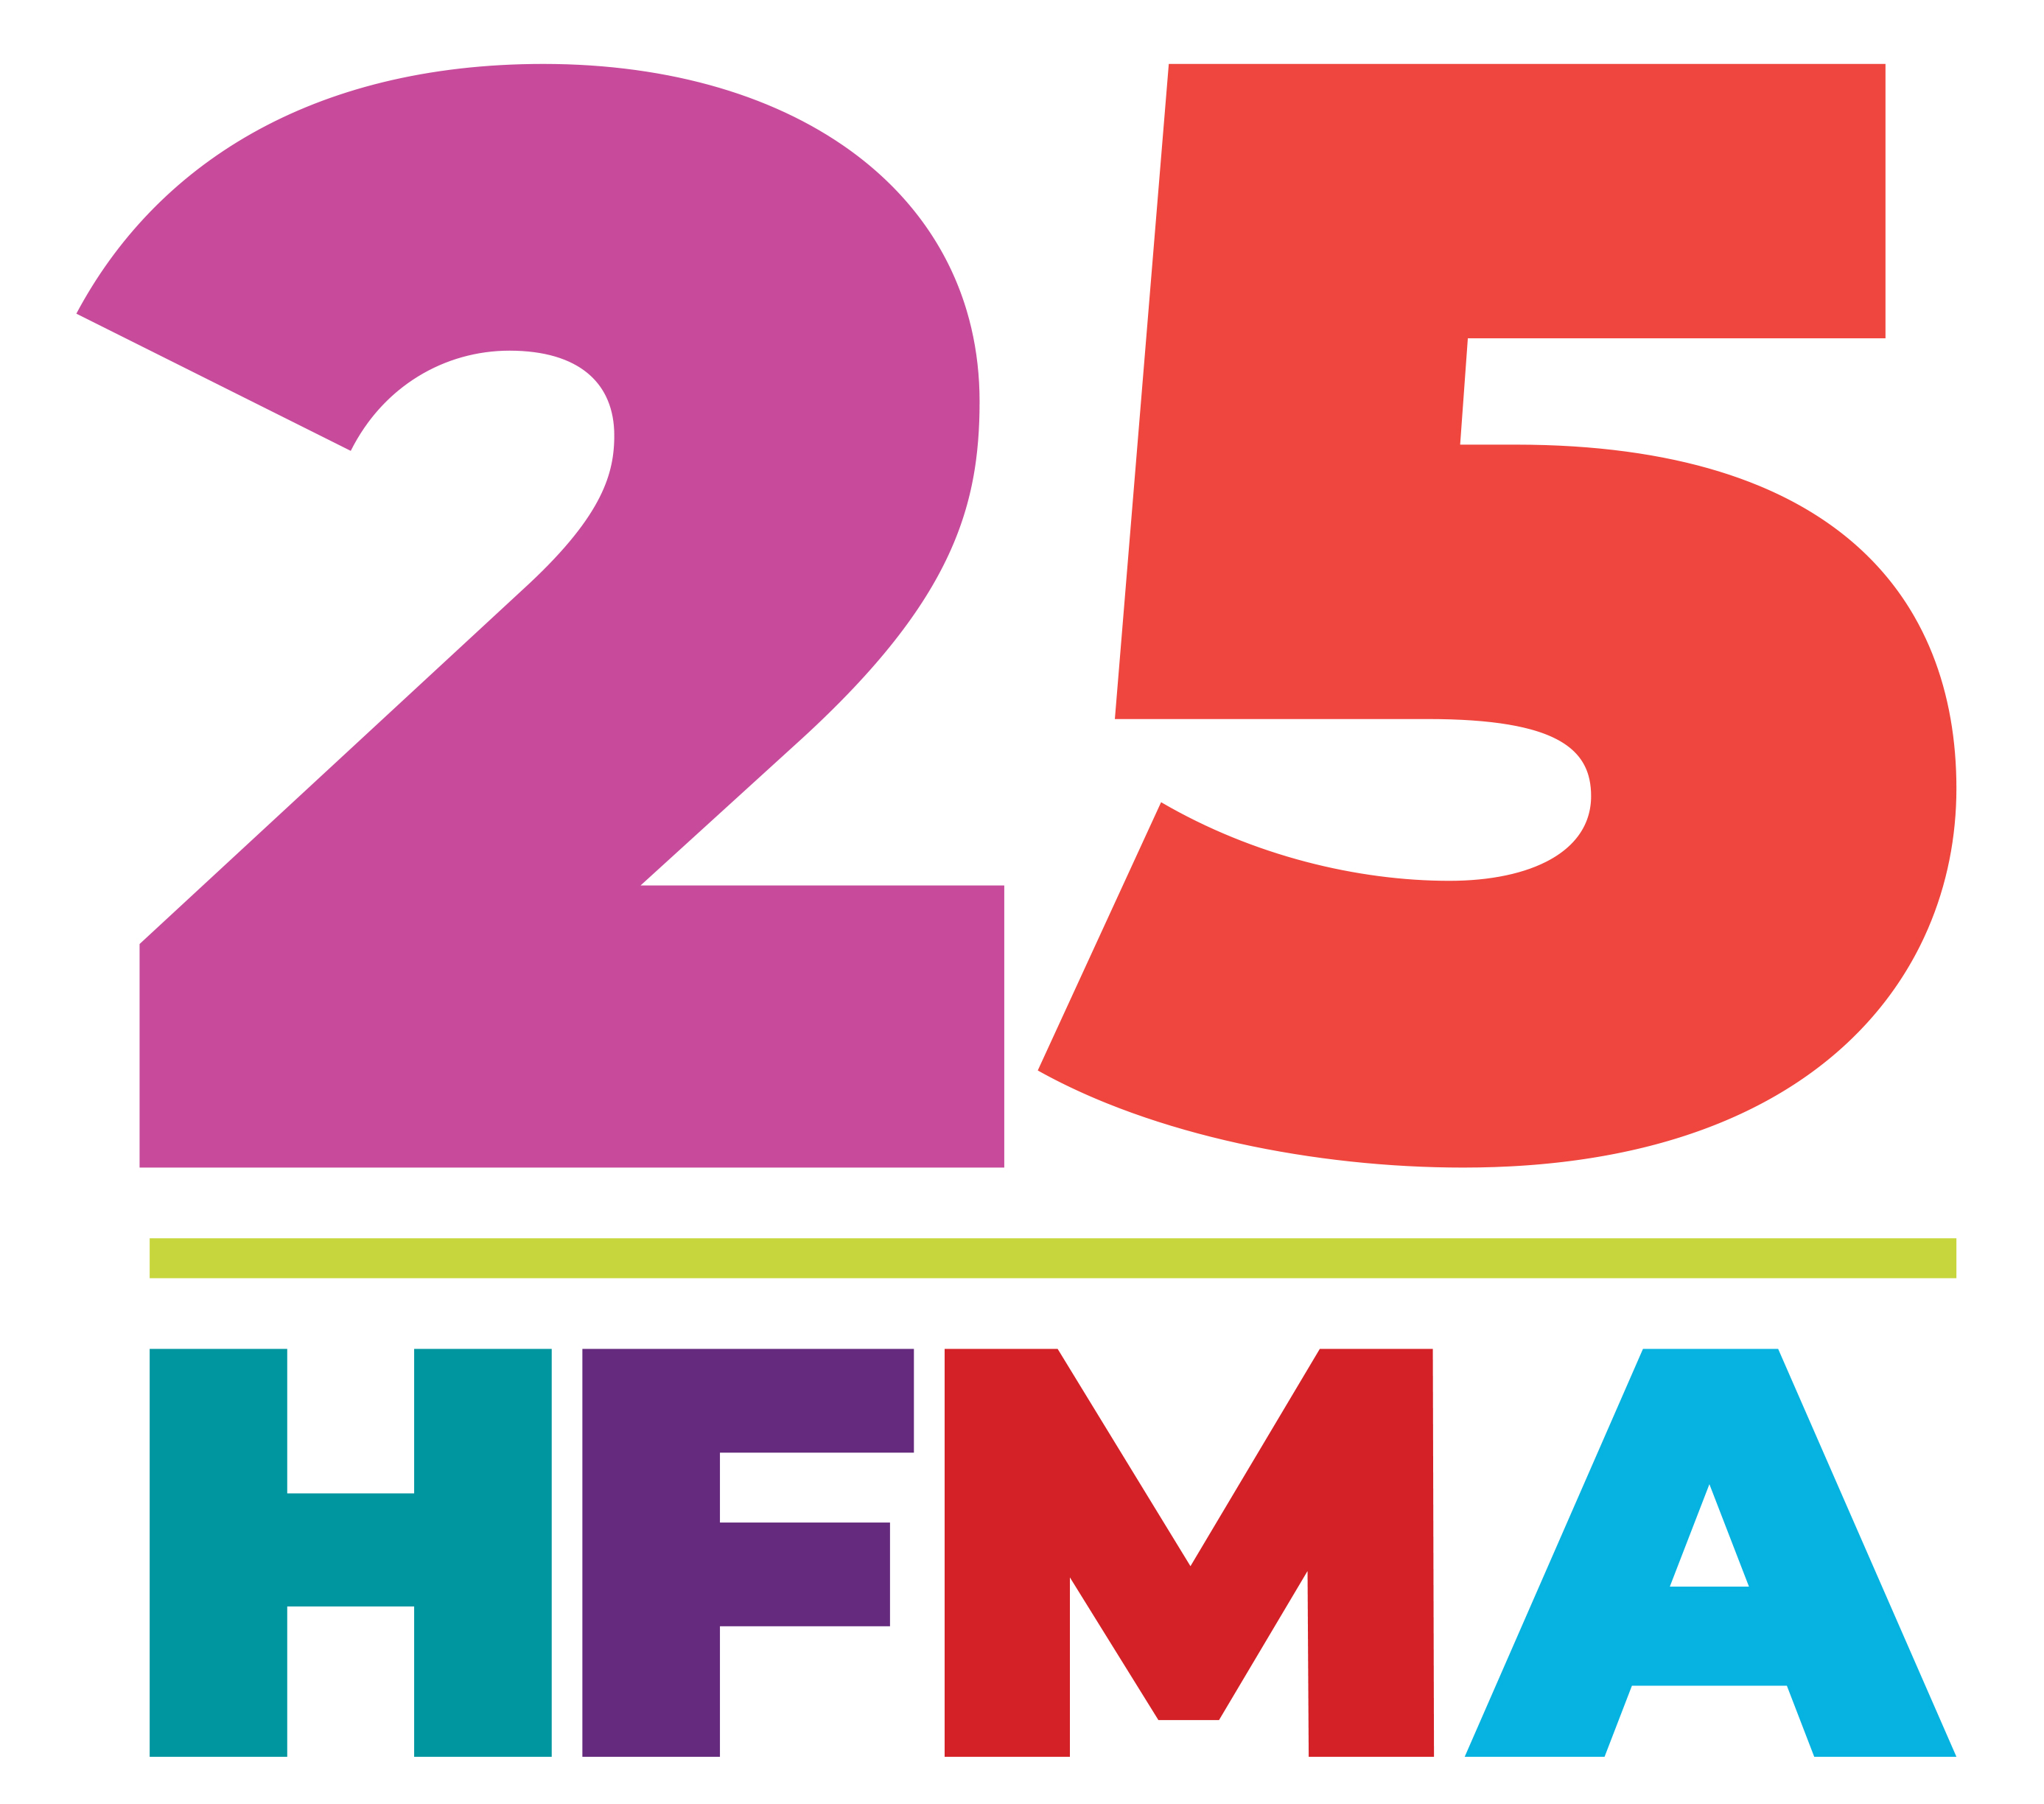 HFMA at 25